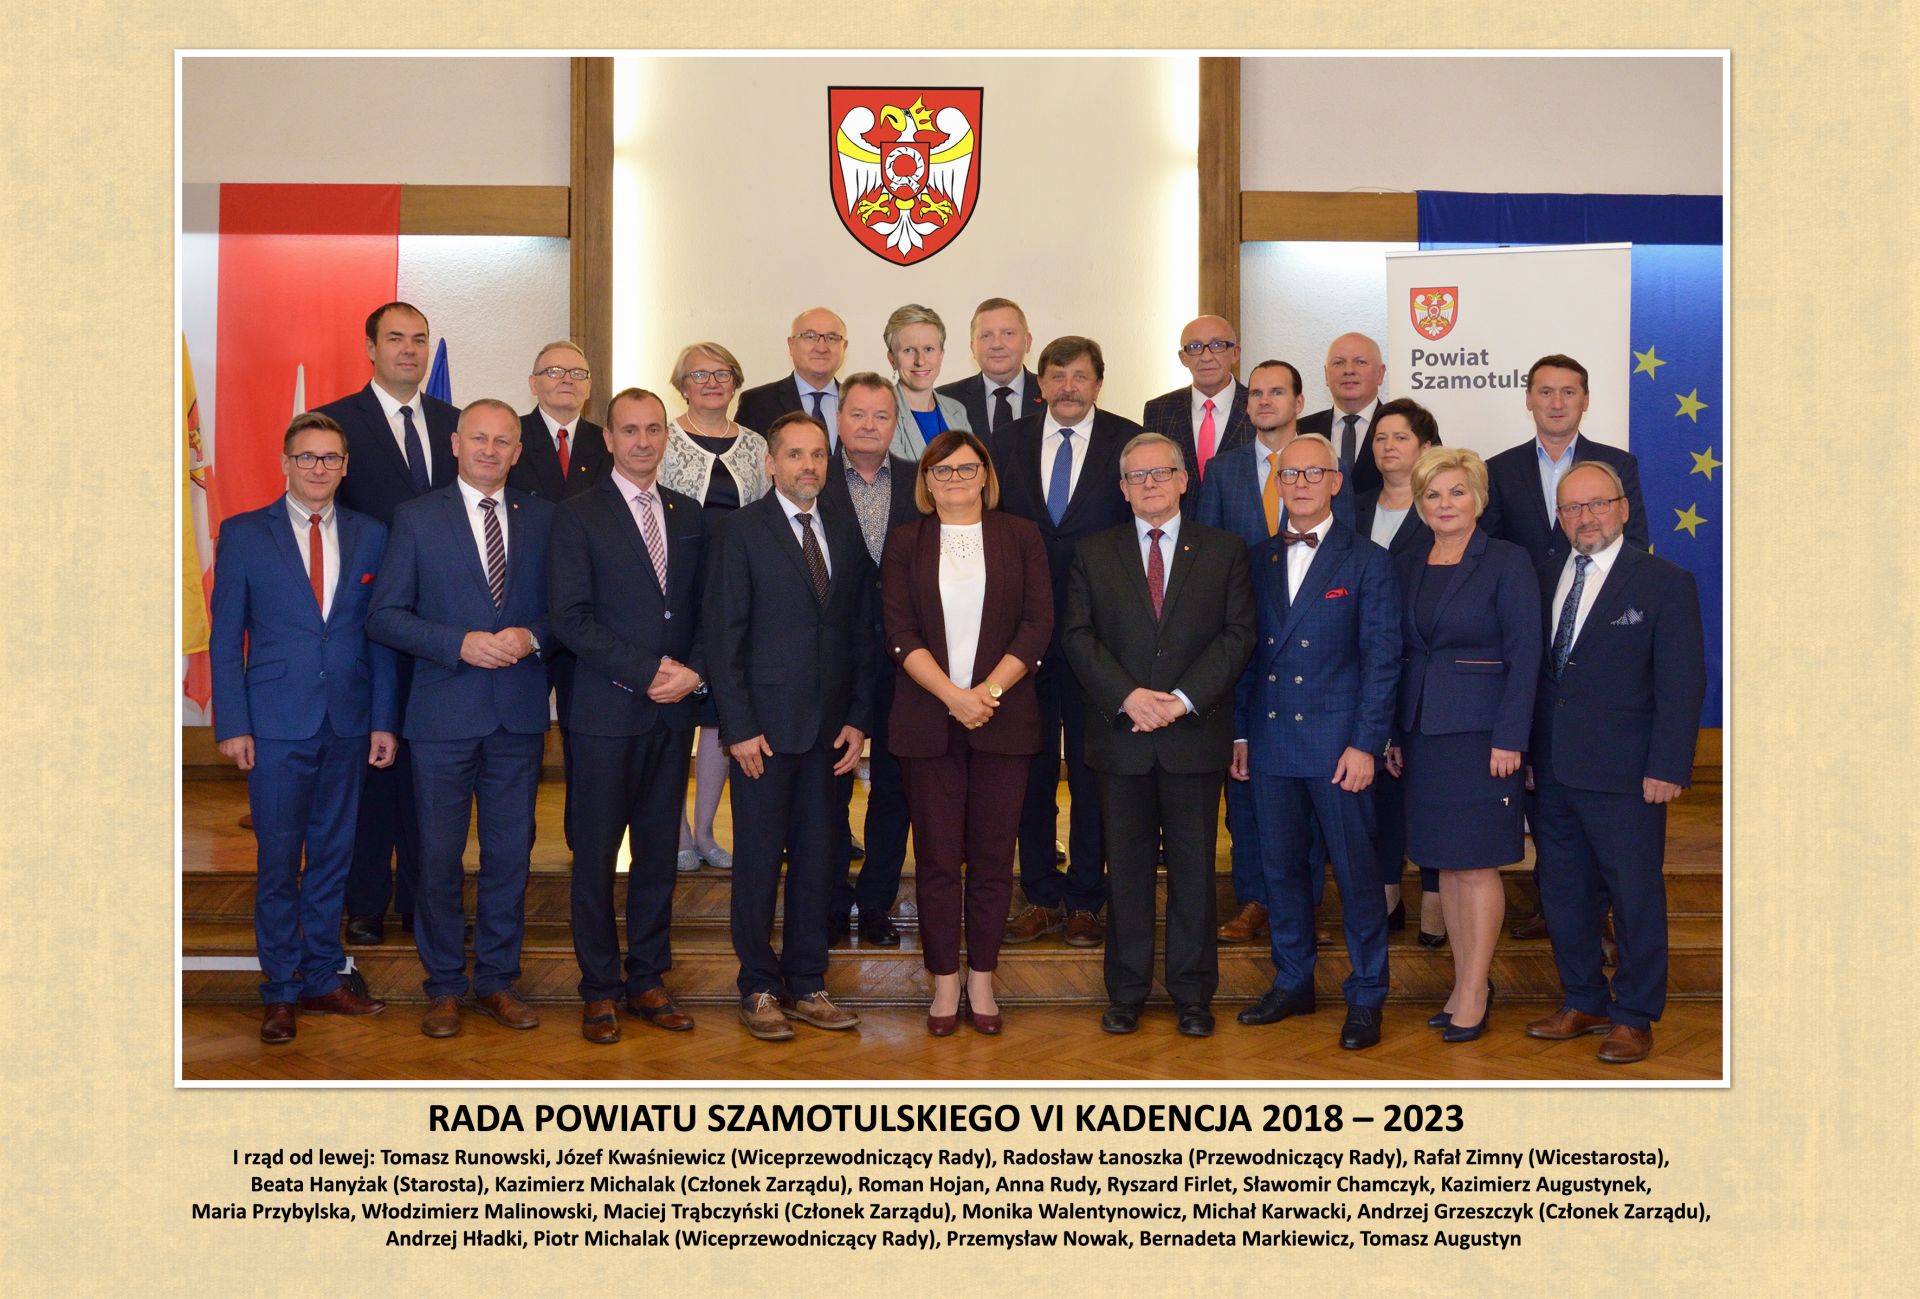 Rada Powiatu Szamotulskiego (2018-2023)